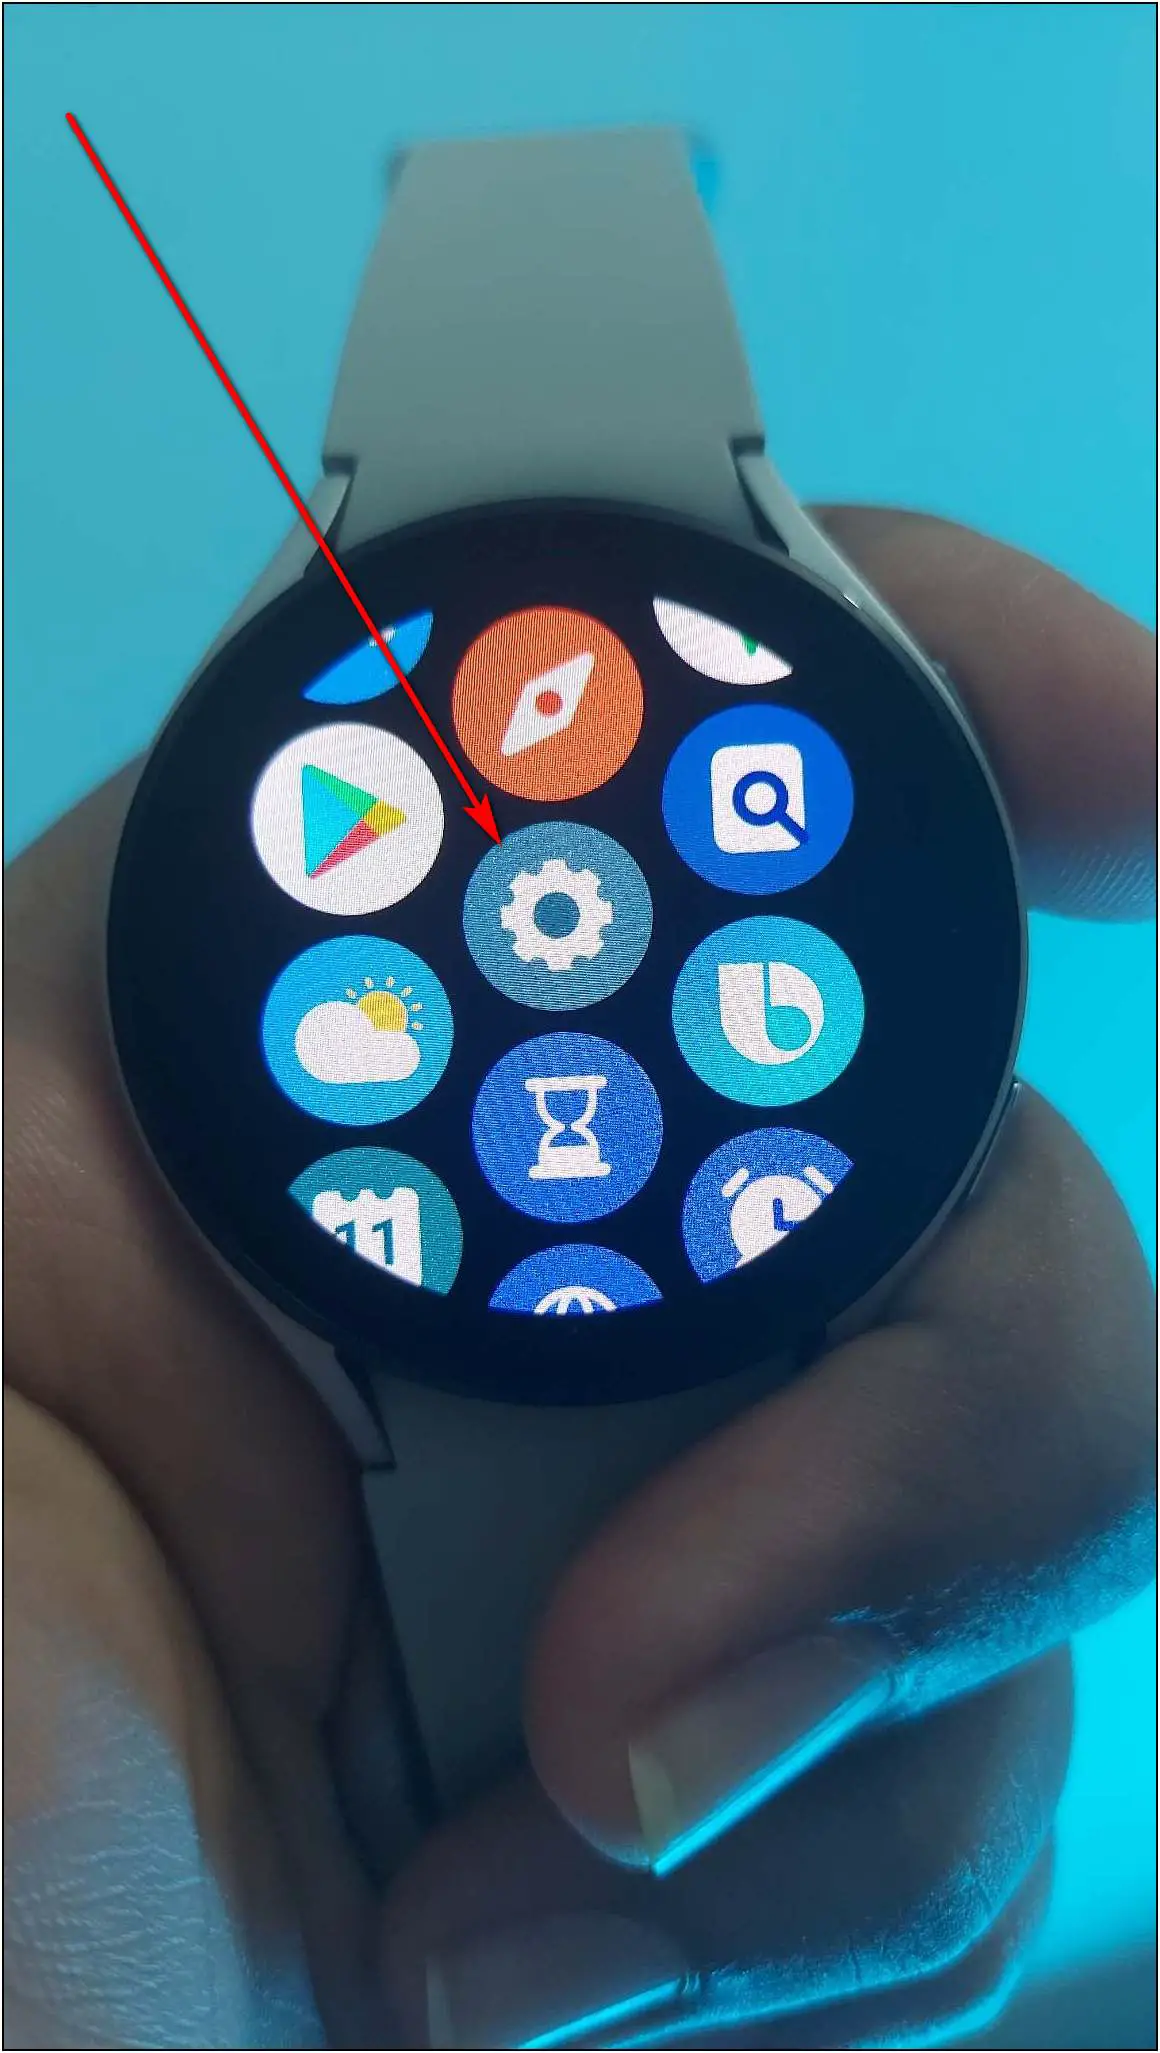 2 Ways to Update Software on Samsung Galaxy Watch 4